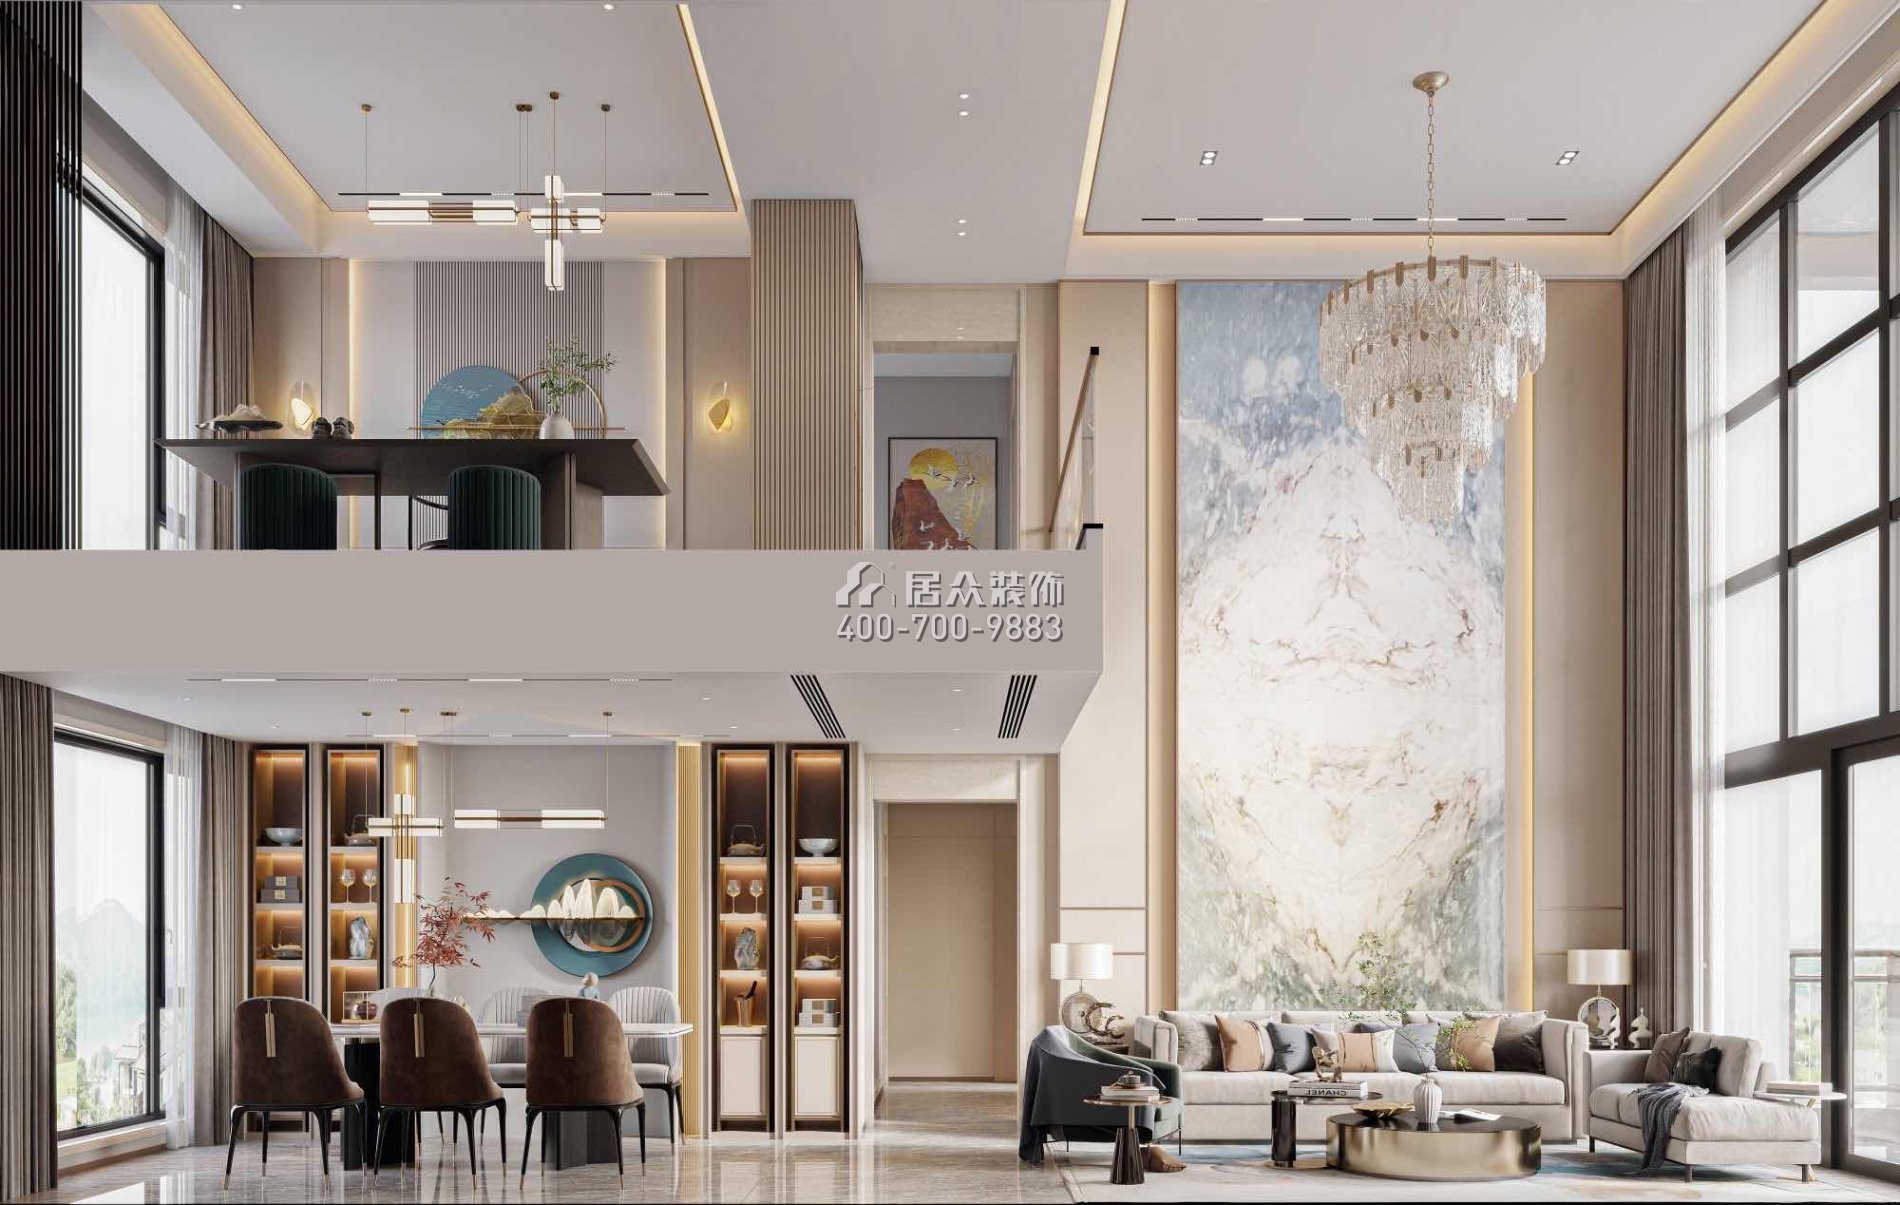 恒裕水墨蘭亭360平方米中式風格復式戶型客餐廳一體裝修效果圖